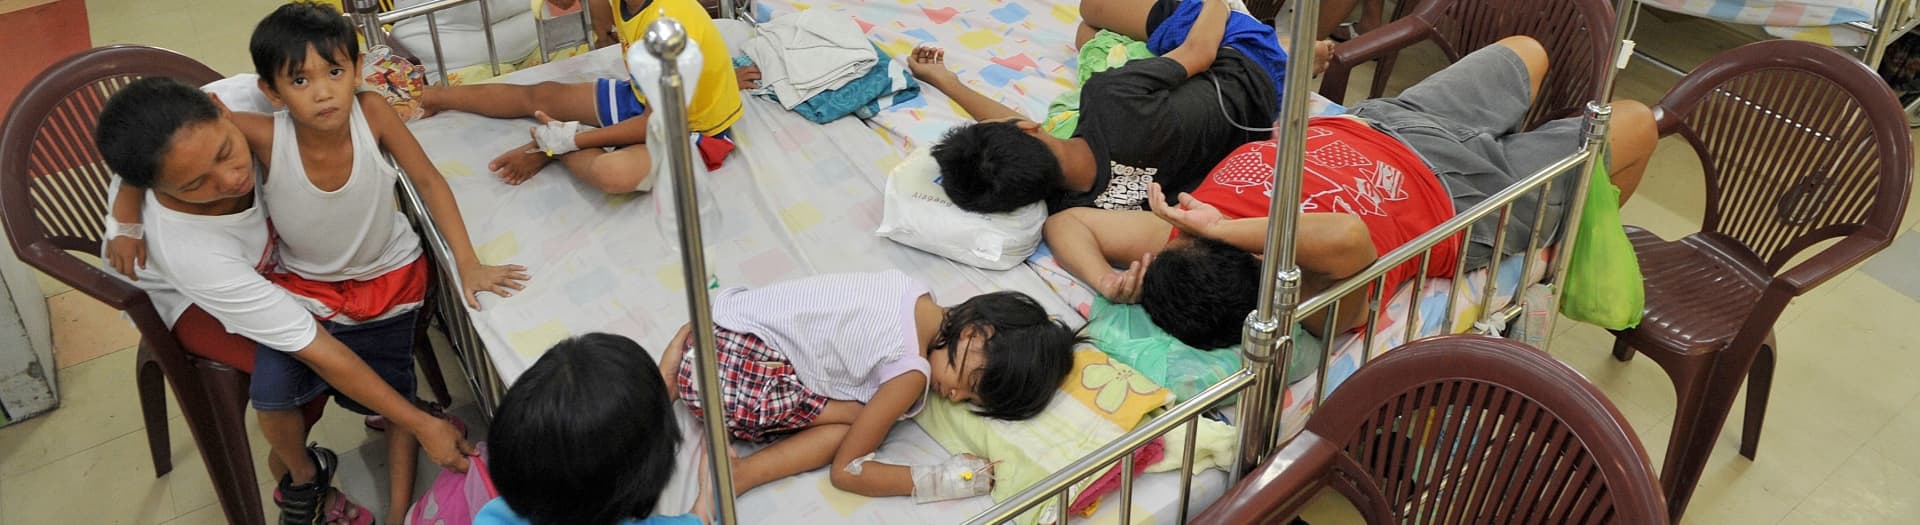 マニラの国立キリノ記念病院の小児病棟にて、デング熱流行により感染した子どもたち